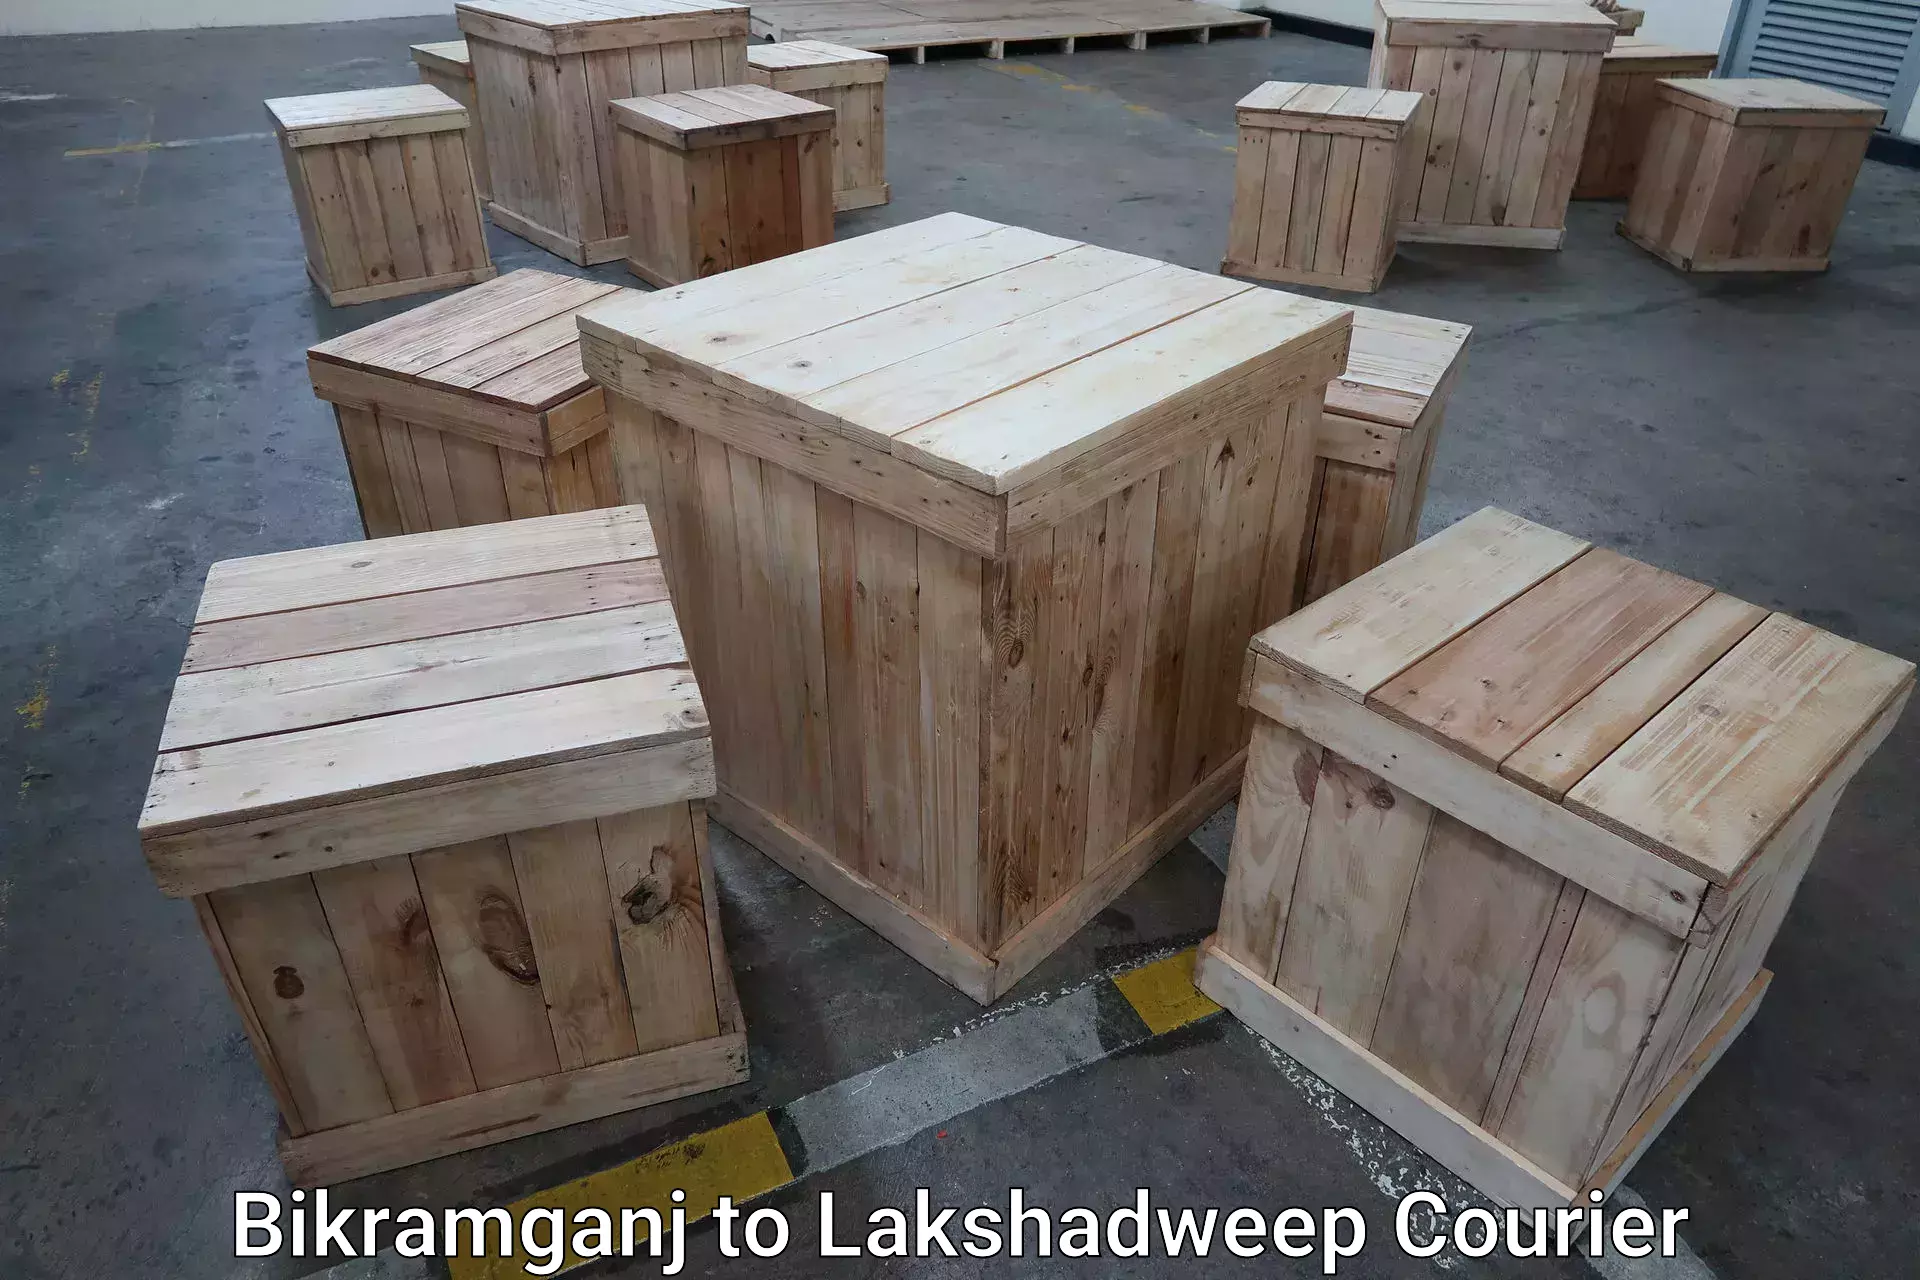 Luggage transit service Bikramganj to Lakshadweep